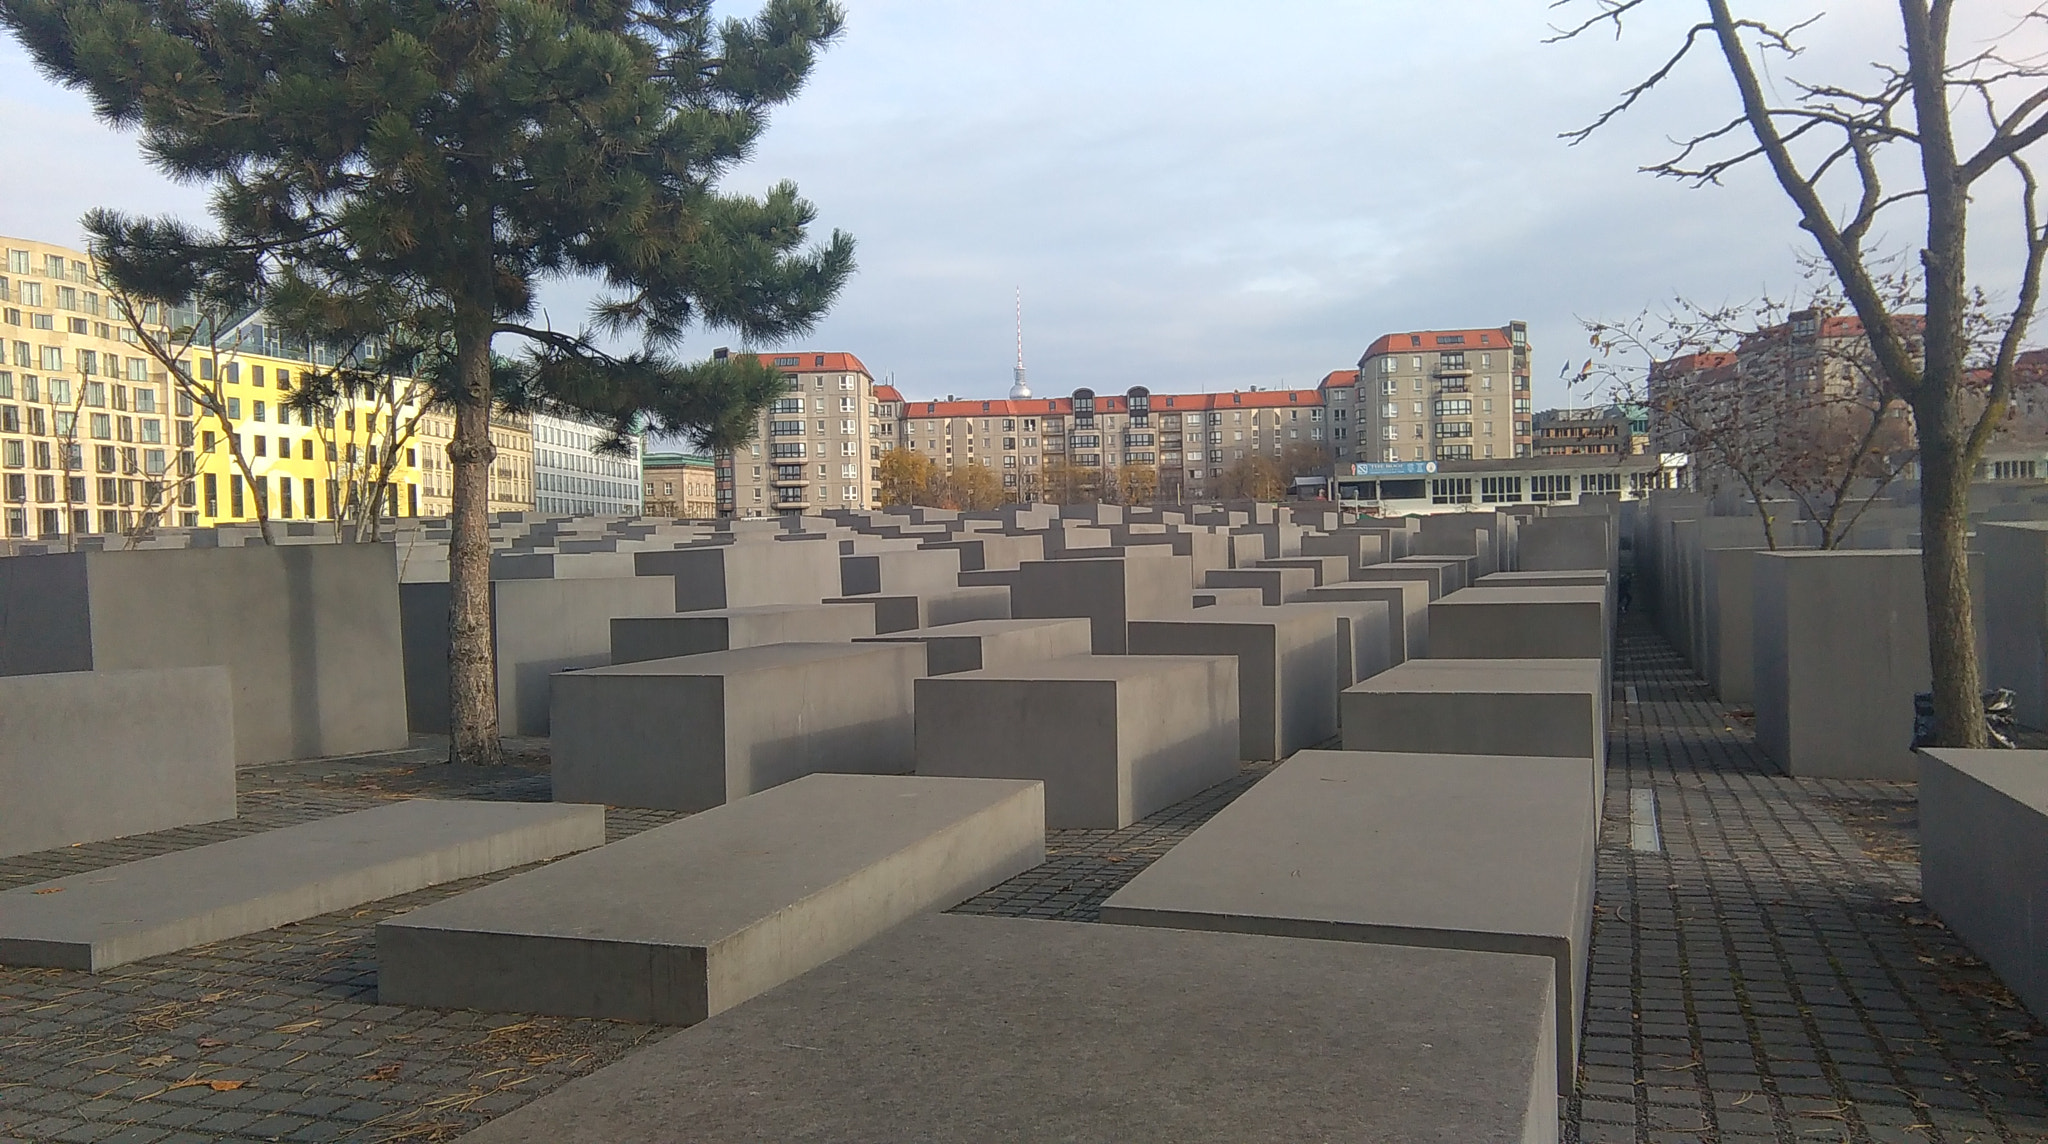 HTC DESIRE 620 sample photo. Denkmal für die ermordeten juden europas photography